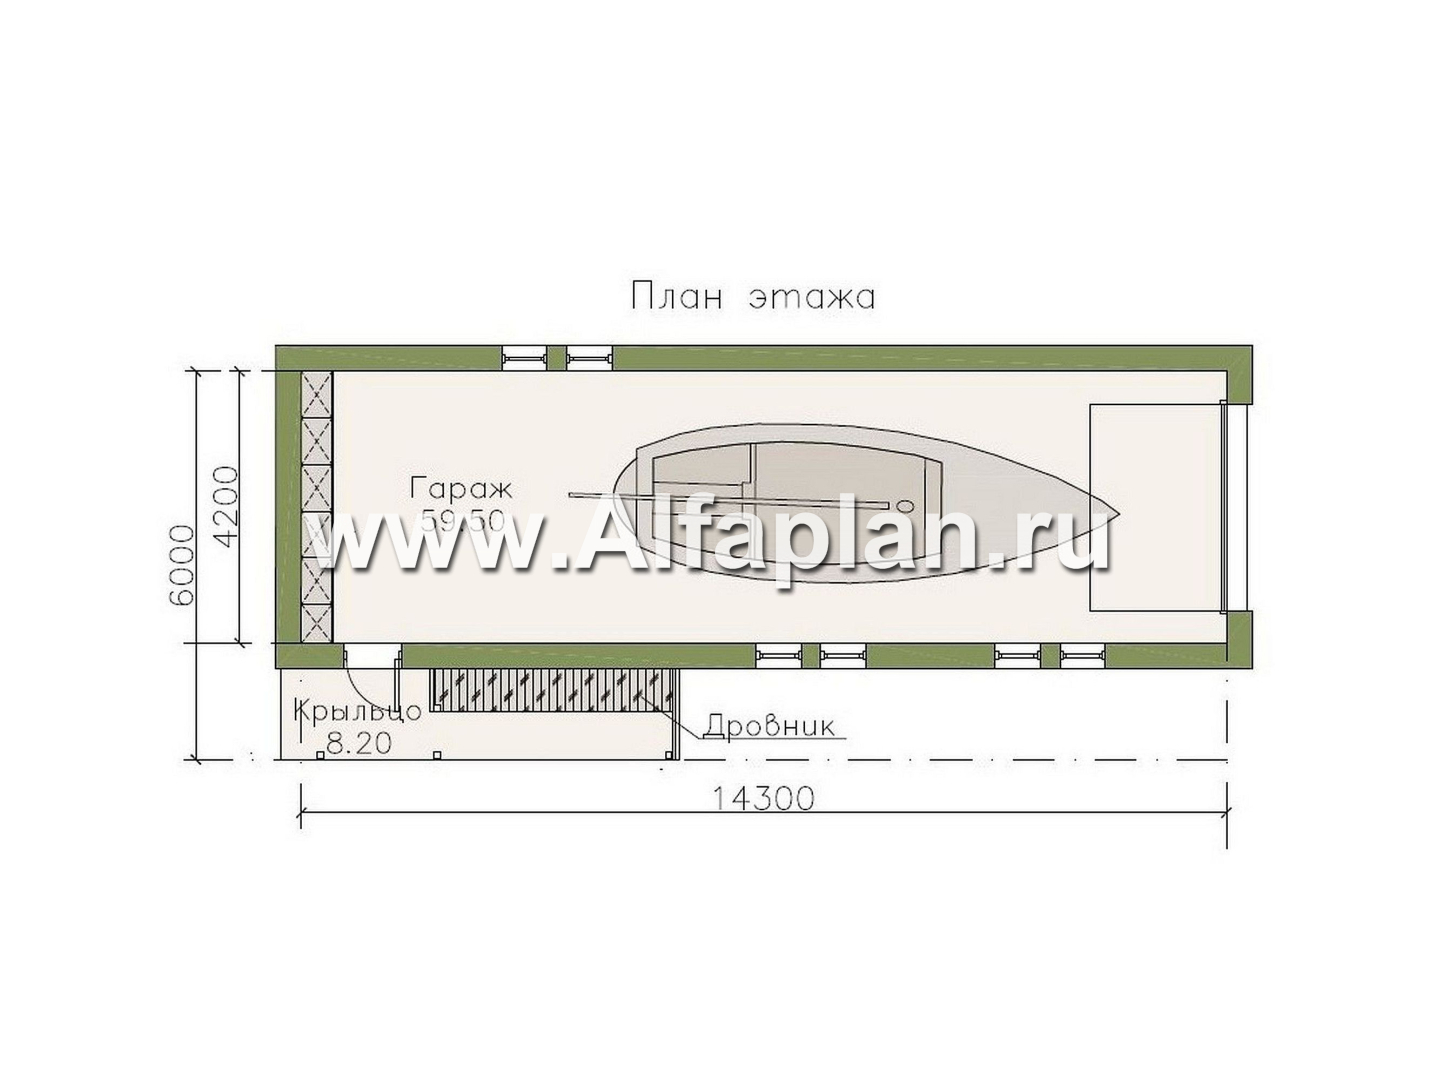 Проекты домов Альфаплан - Длинный гараж на 2 места или эллинг для катера - план проекта №1